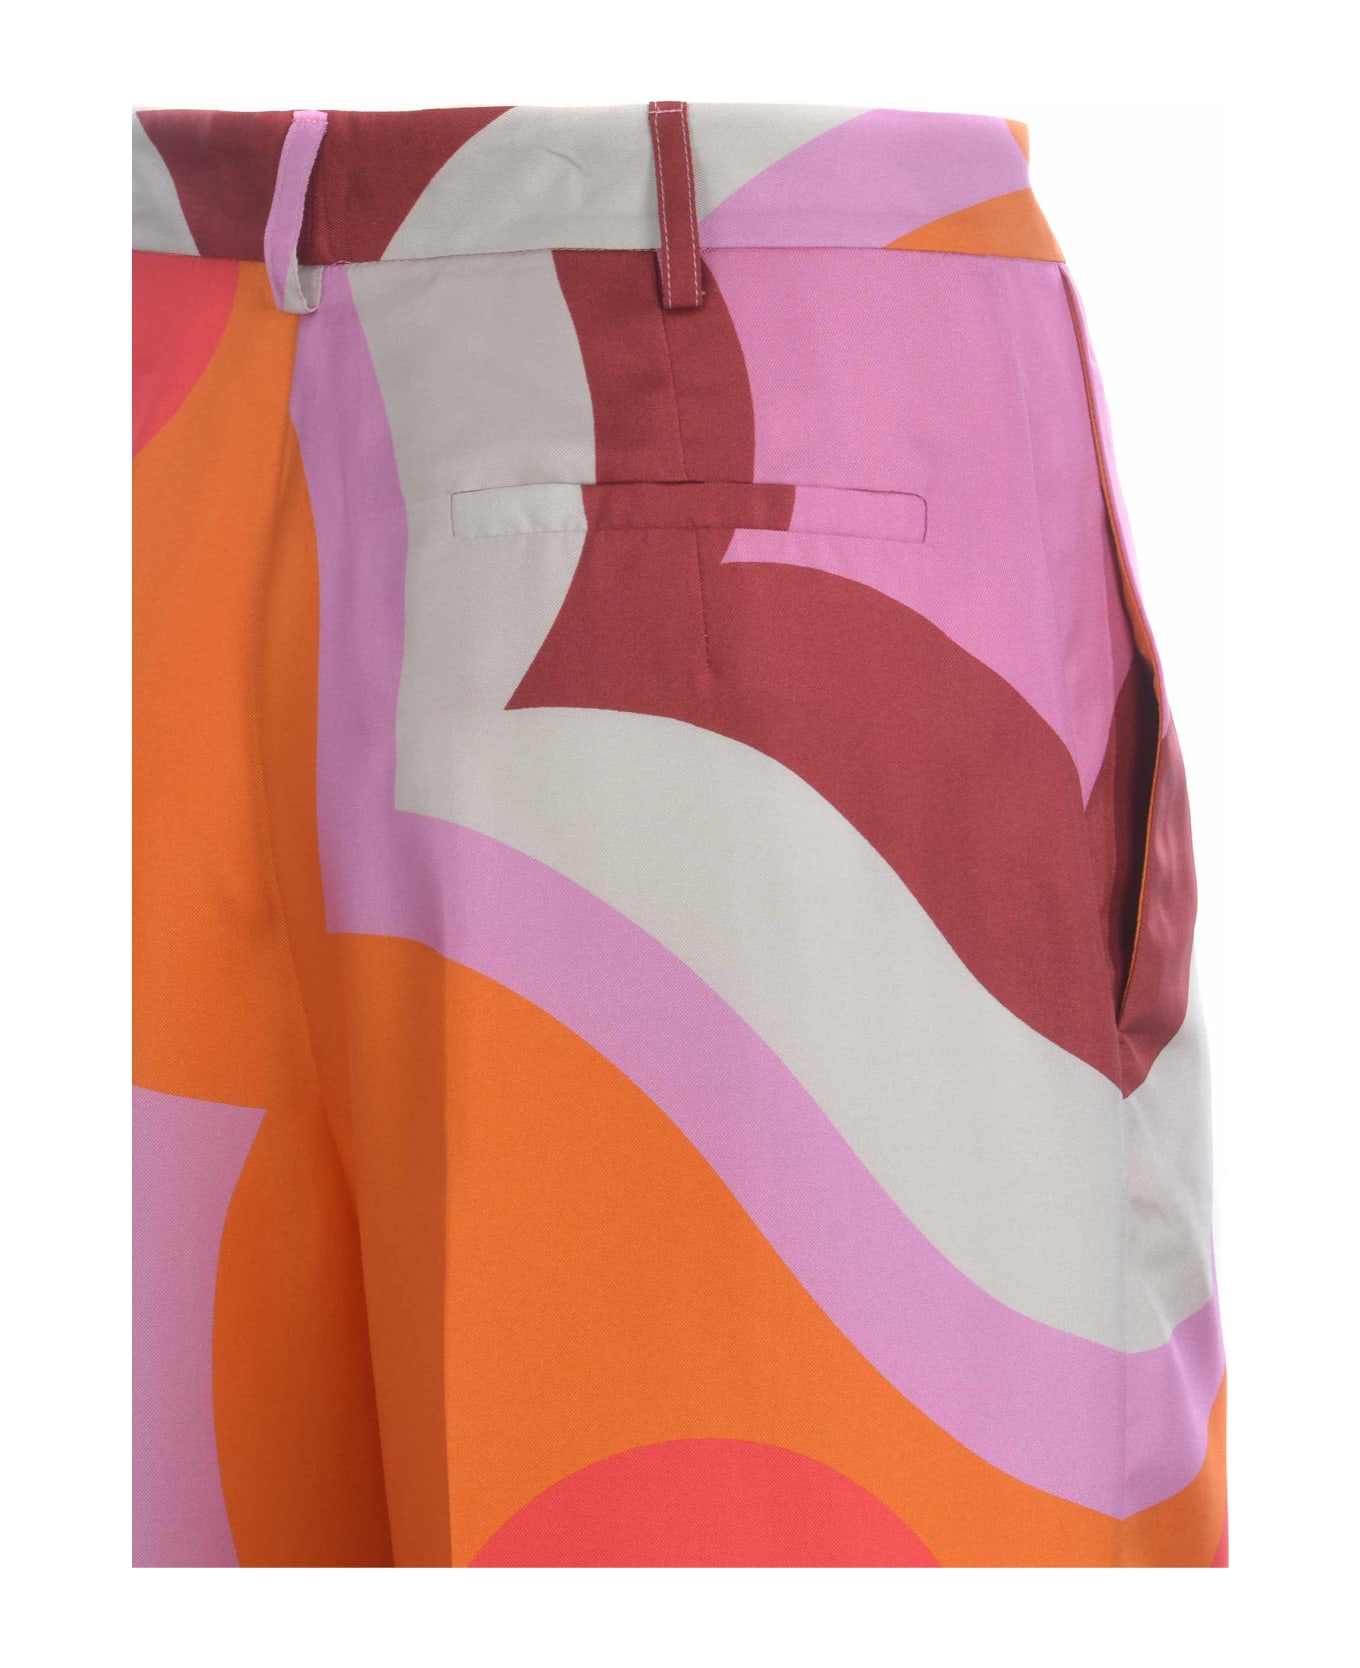 Etro Trousers Etro "color Block" In Silk - Arancione